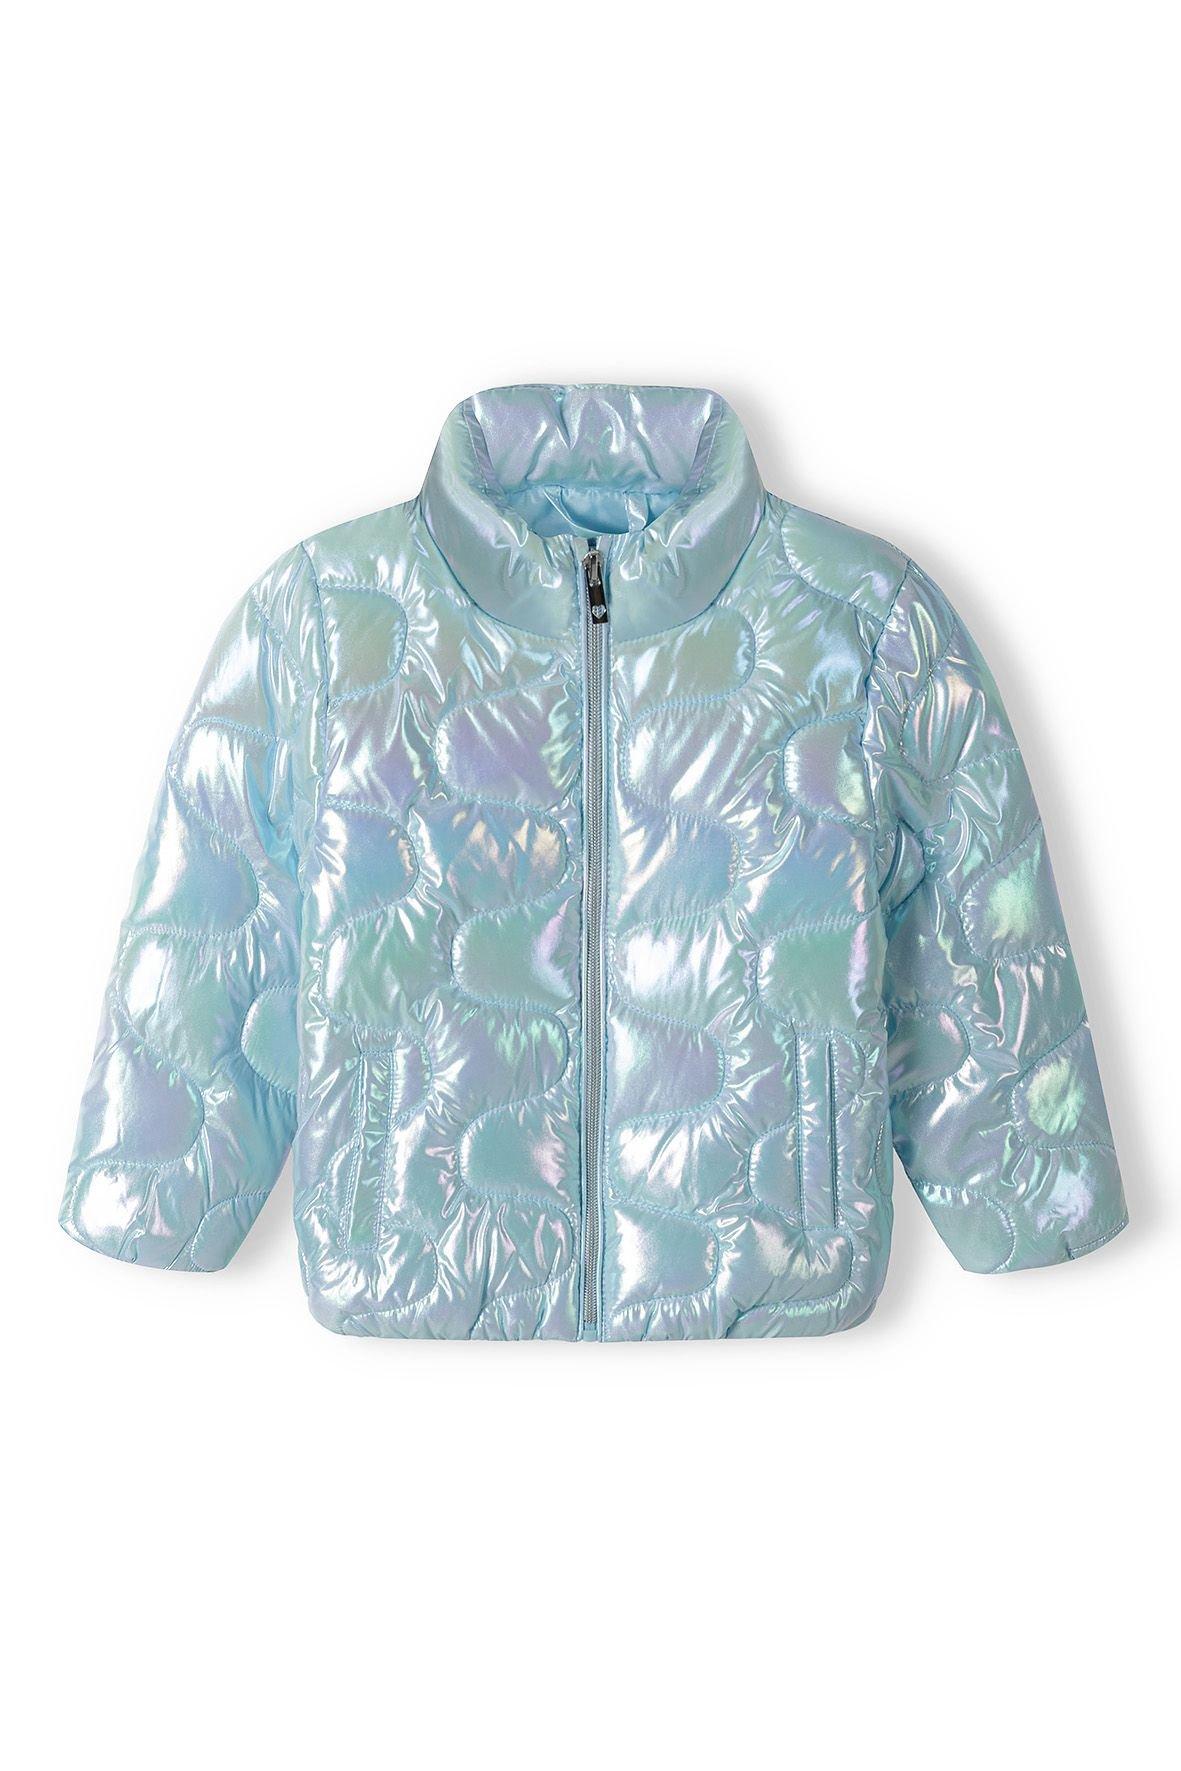 Louis Vuitton Metallic Monogram Flowers Reversible Puffer Jacket Silver. Size 40